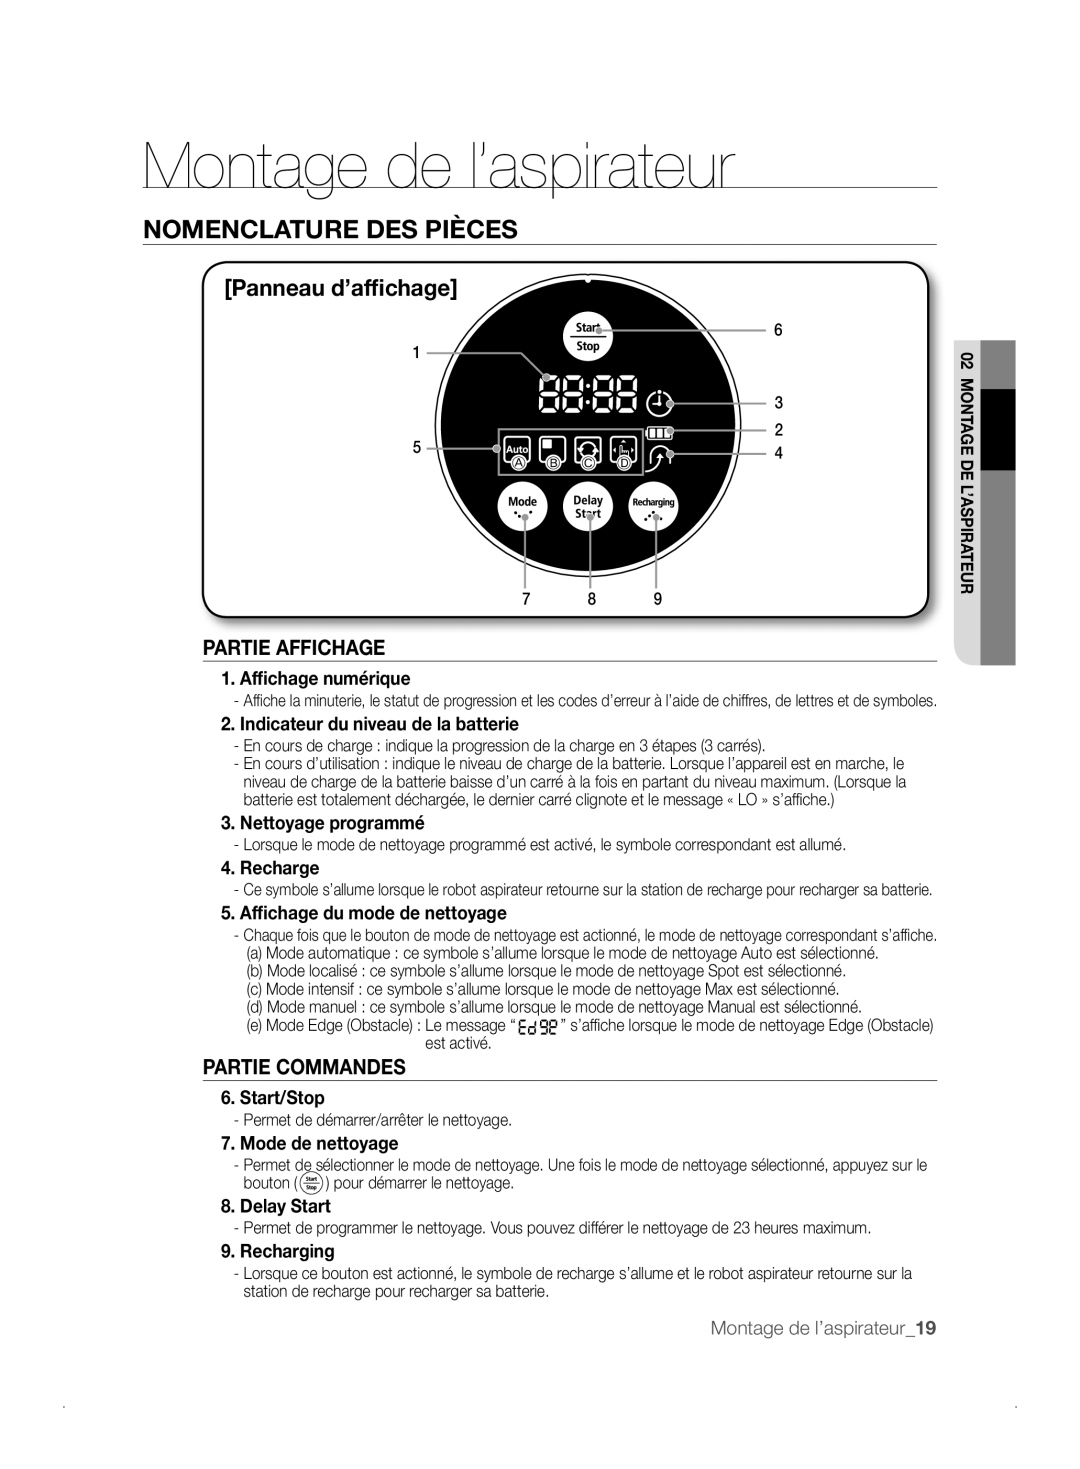 Samsung VCR8841T3B/XEF manual Partie Affichage, Partie Commandes, Montage de l’aspirateur, Nomenclature Des Pièces 